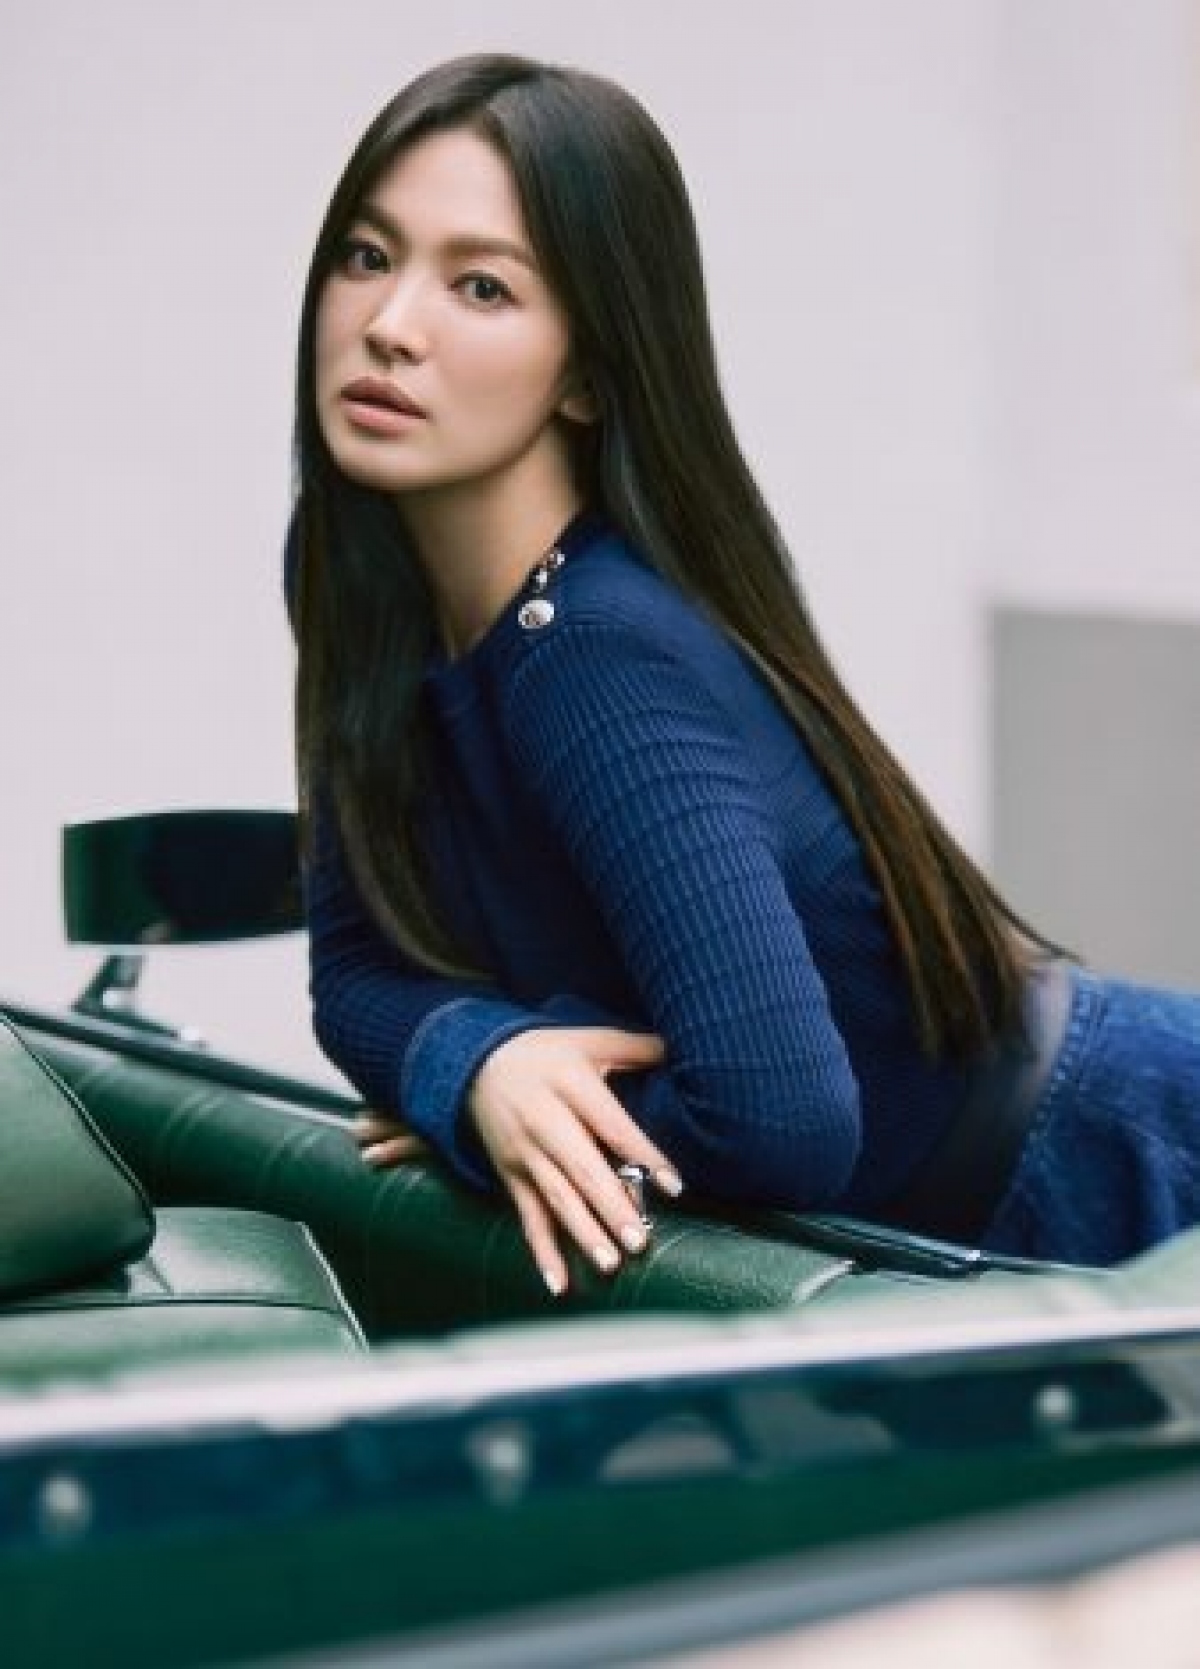 Song Hye Kyo "bỏ túi" 2,4 tỉ đồng cho một bài đăng trên Instagram